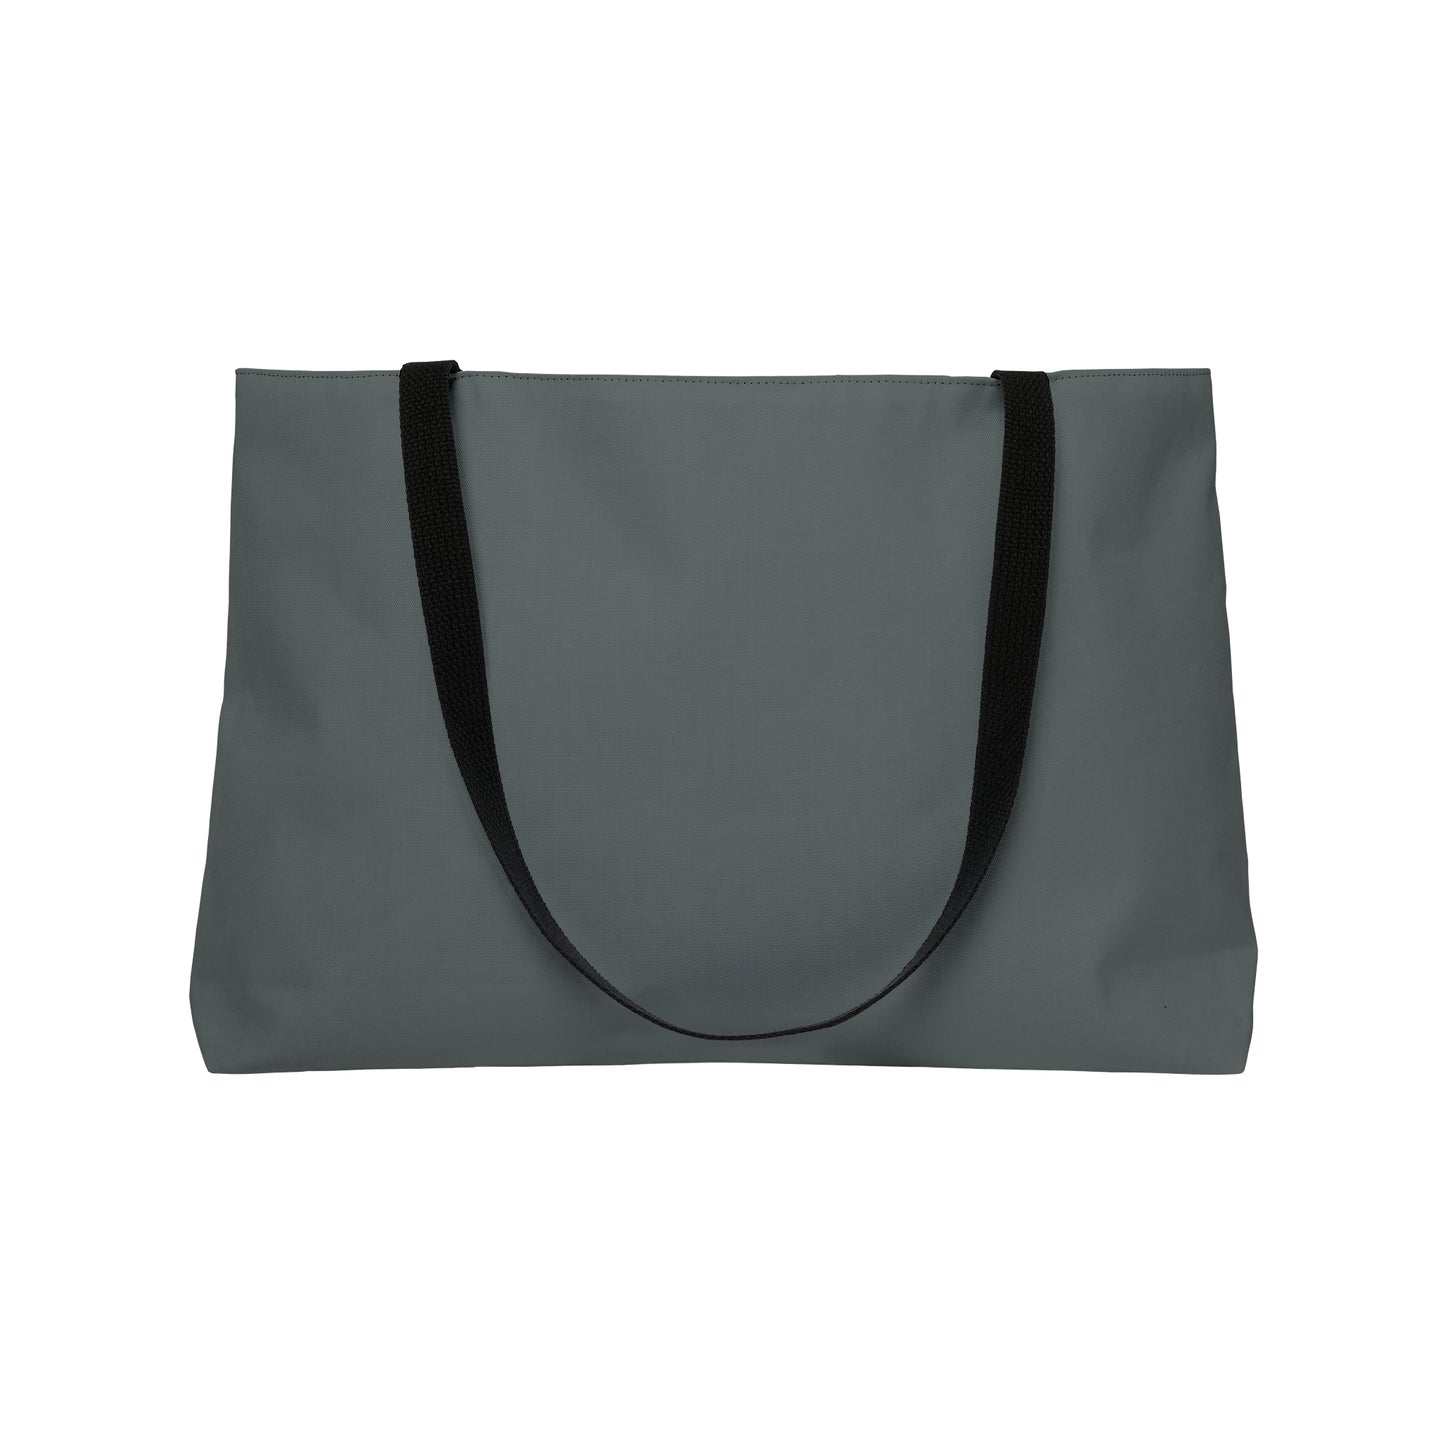 Speak Your Mind Weekender Tote Bag (Grey)